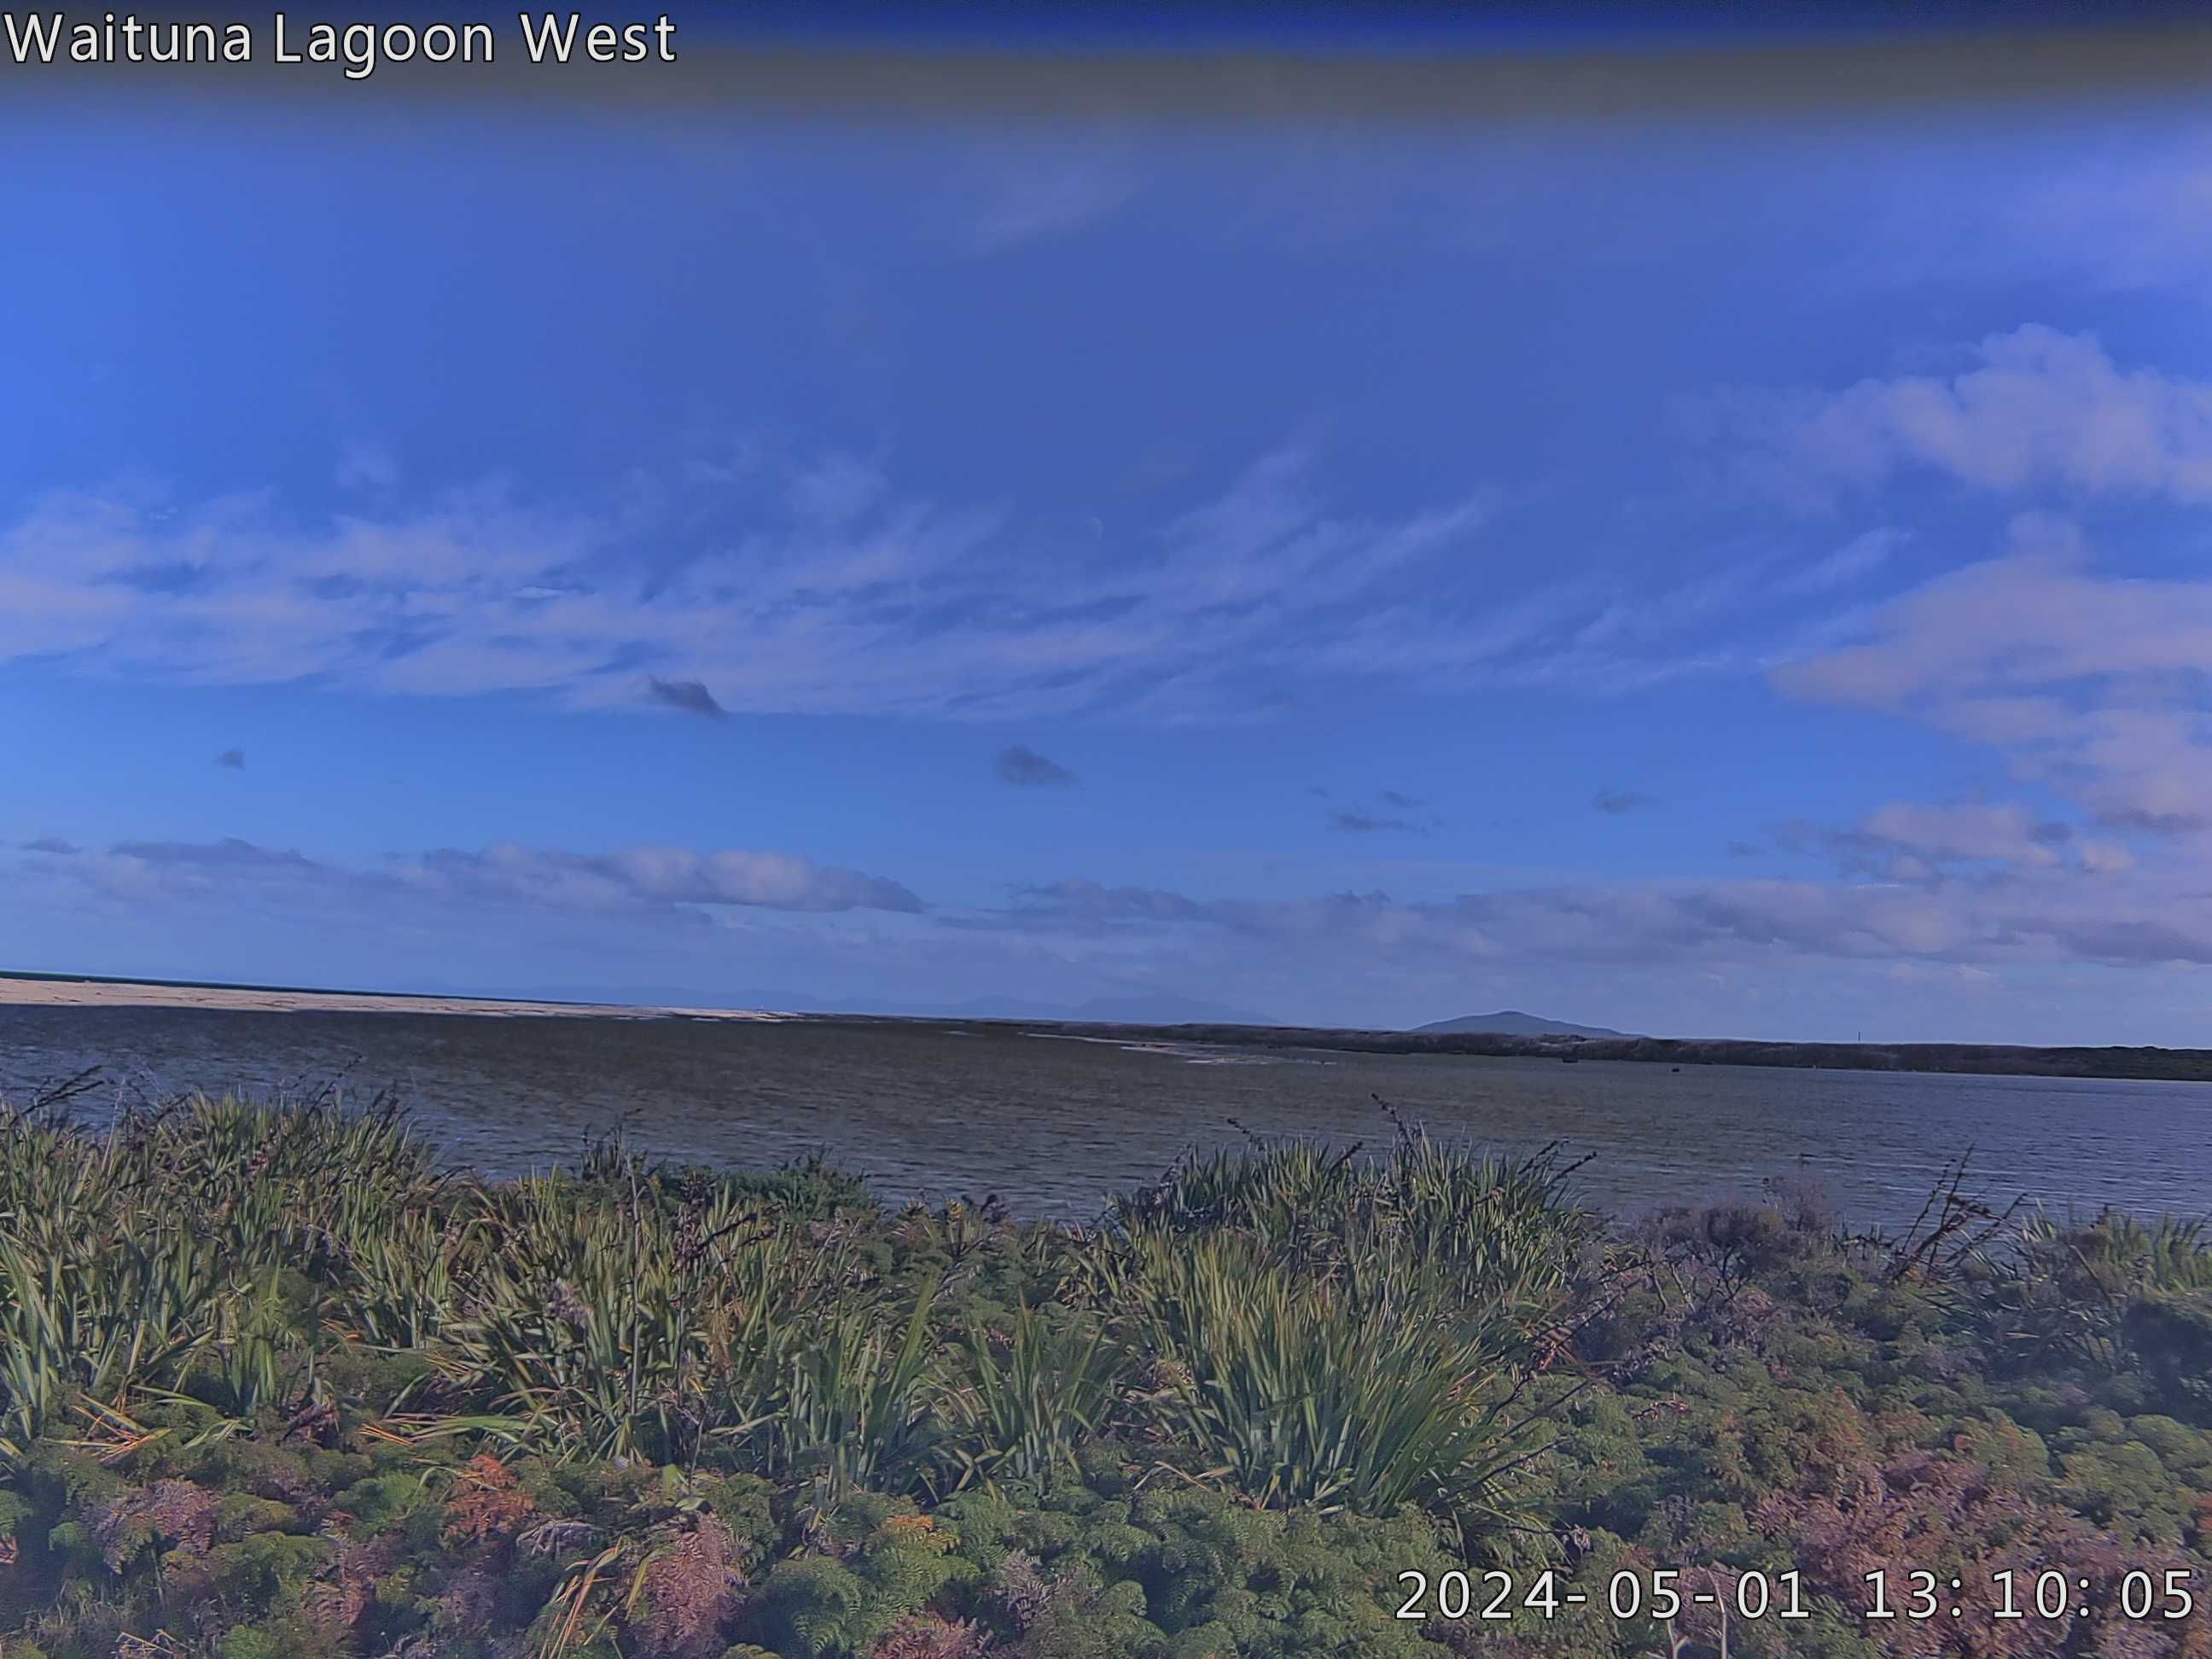 Breakout - Waituna Lagoon